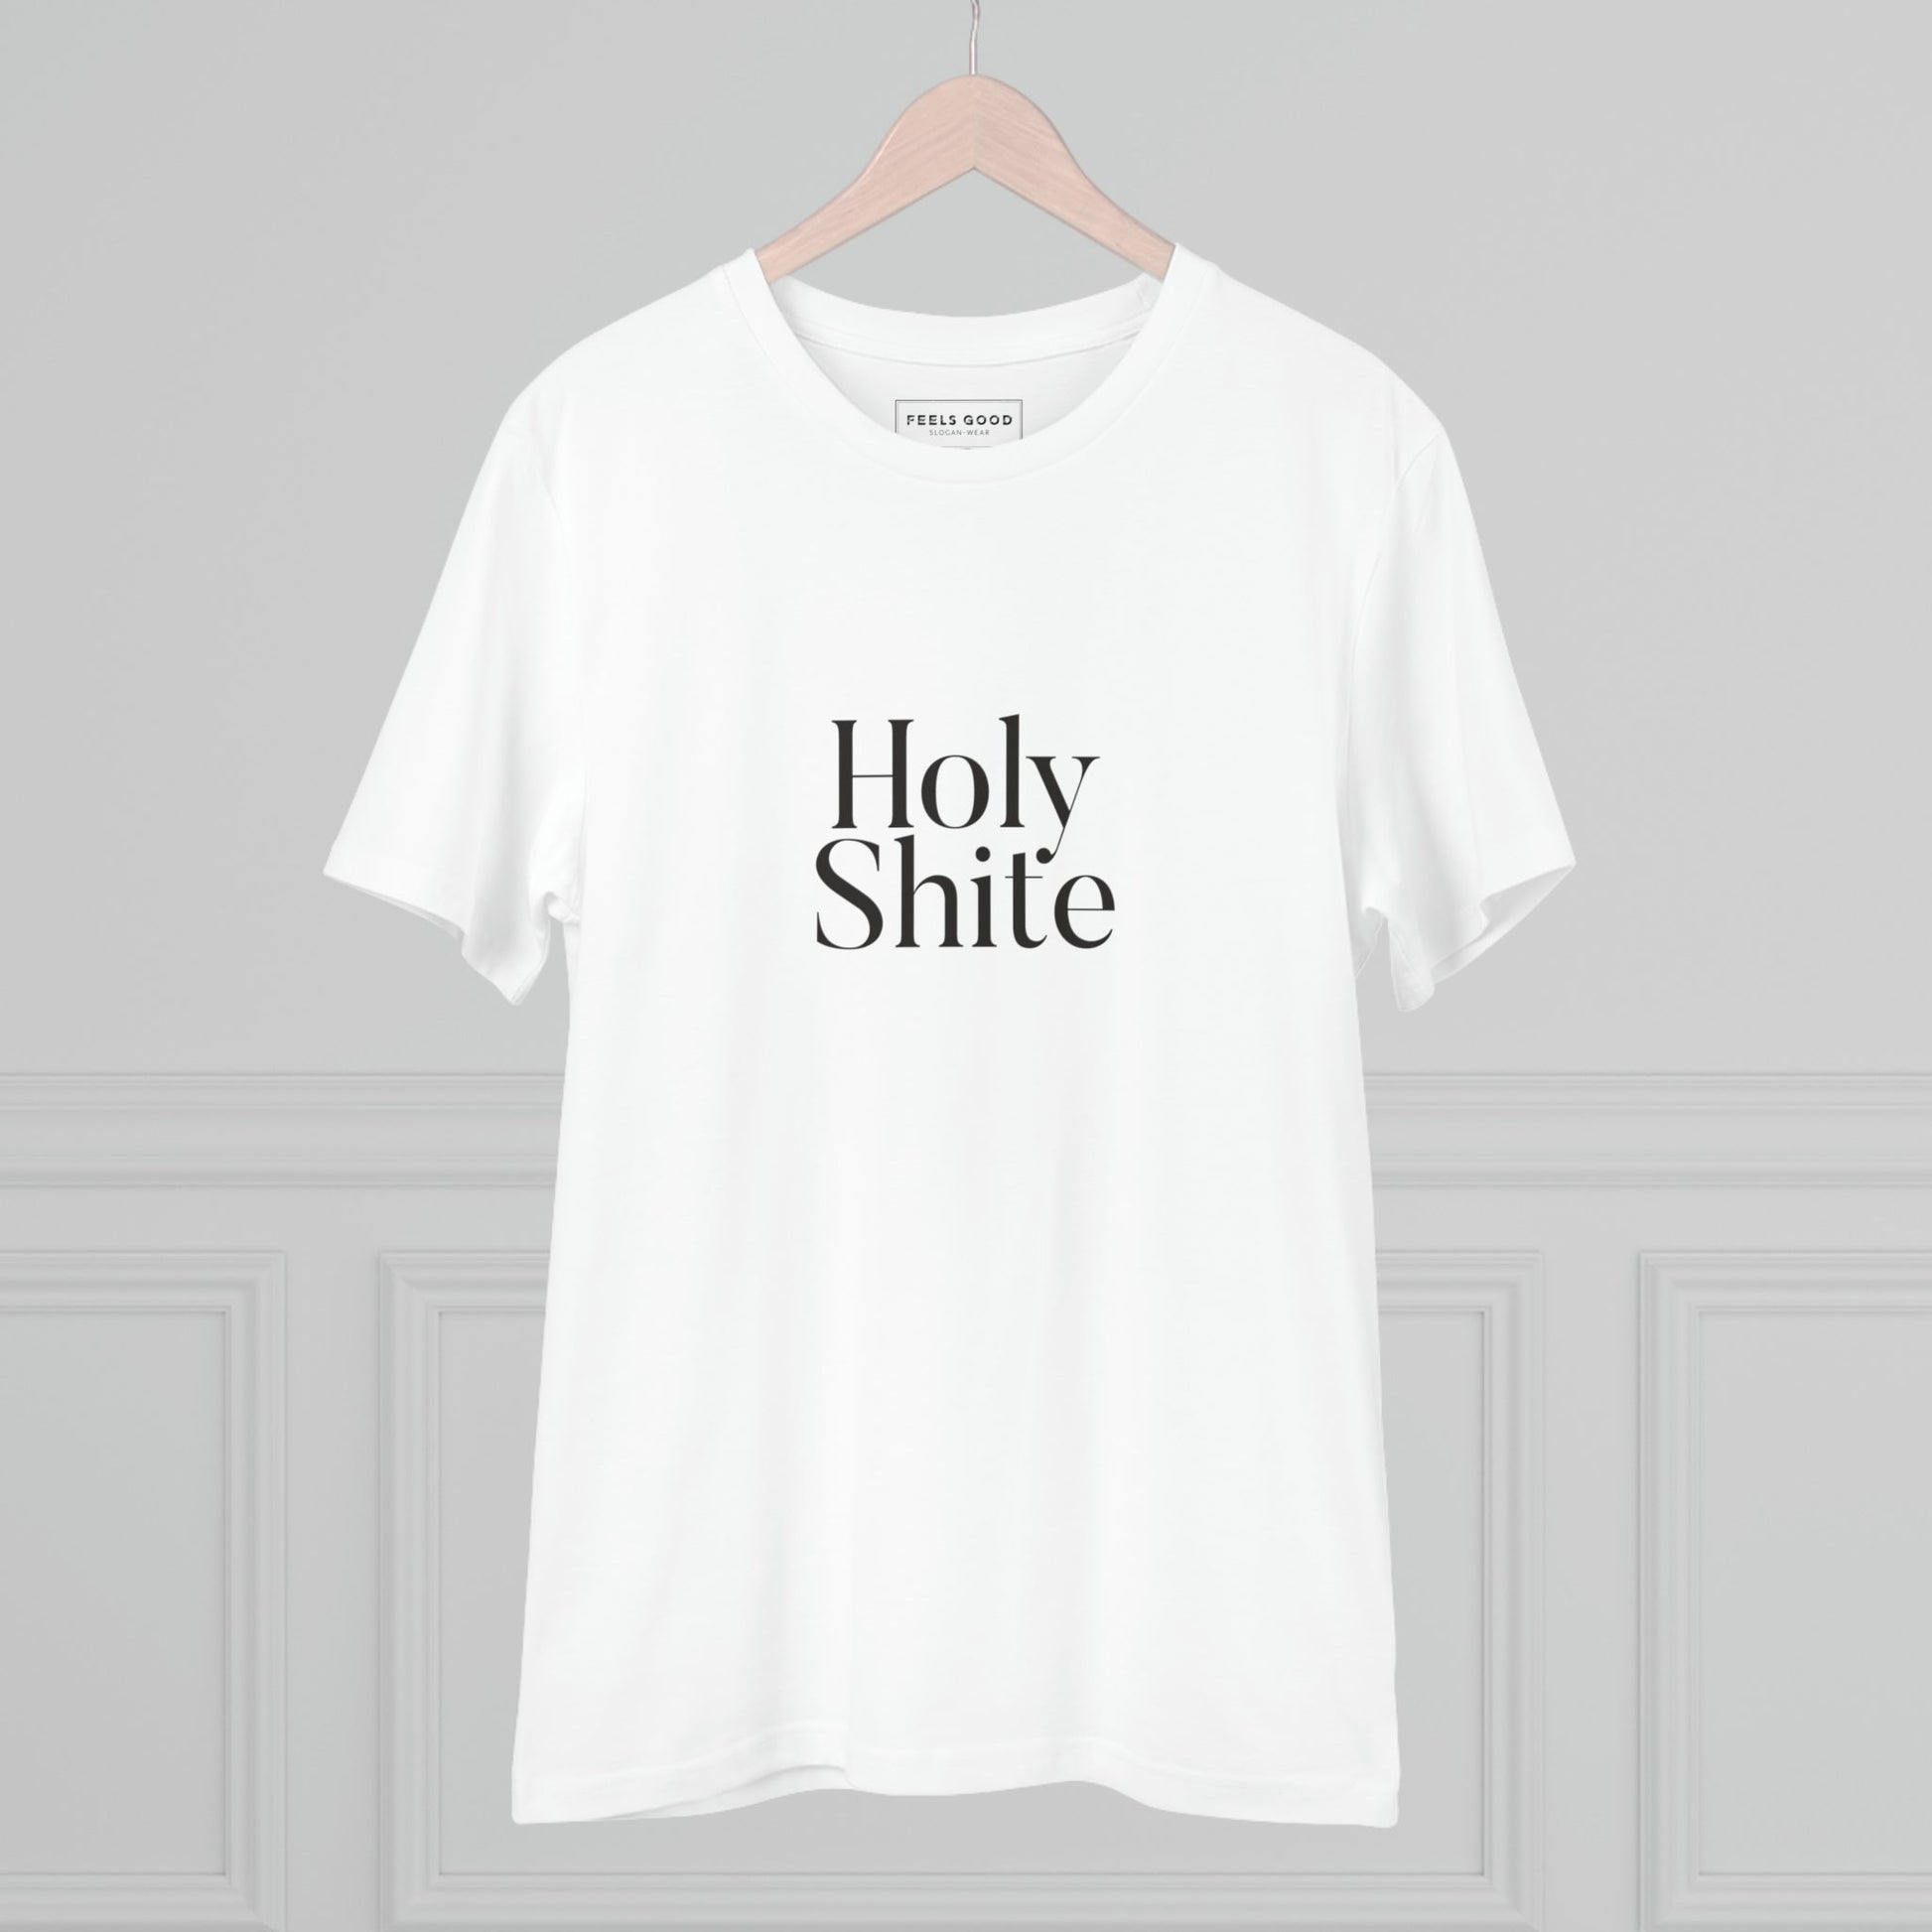 Glaswegian Slang 'Holy Shite' Organic Cotton T-shirt - Eco Tshirt